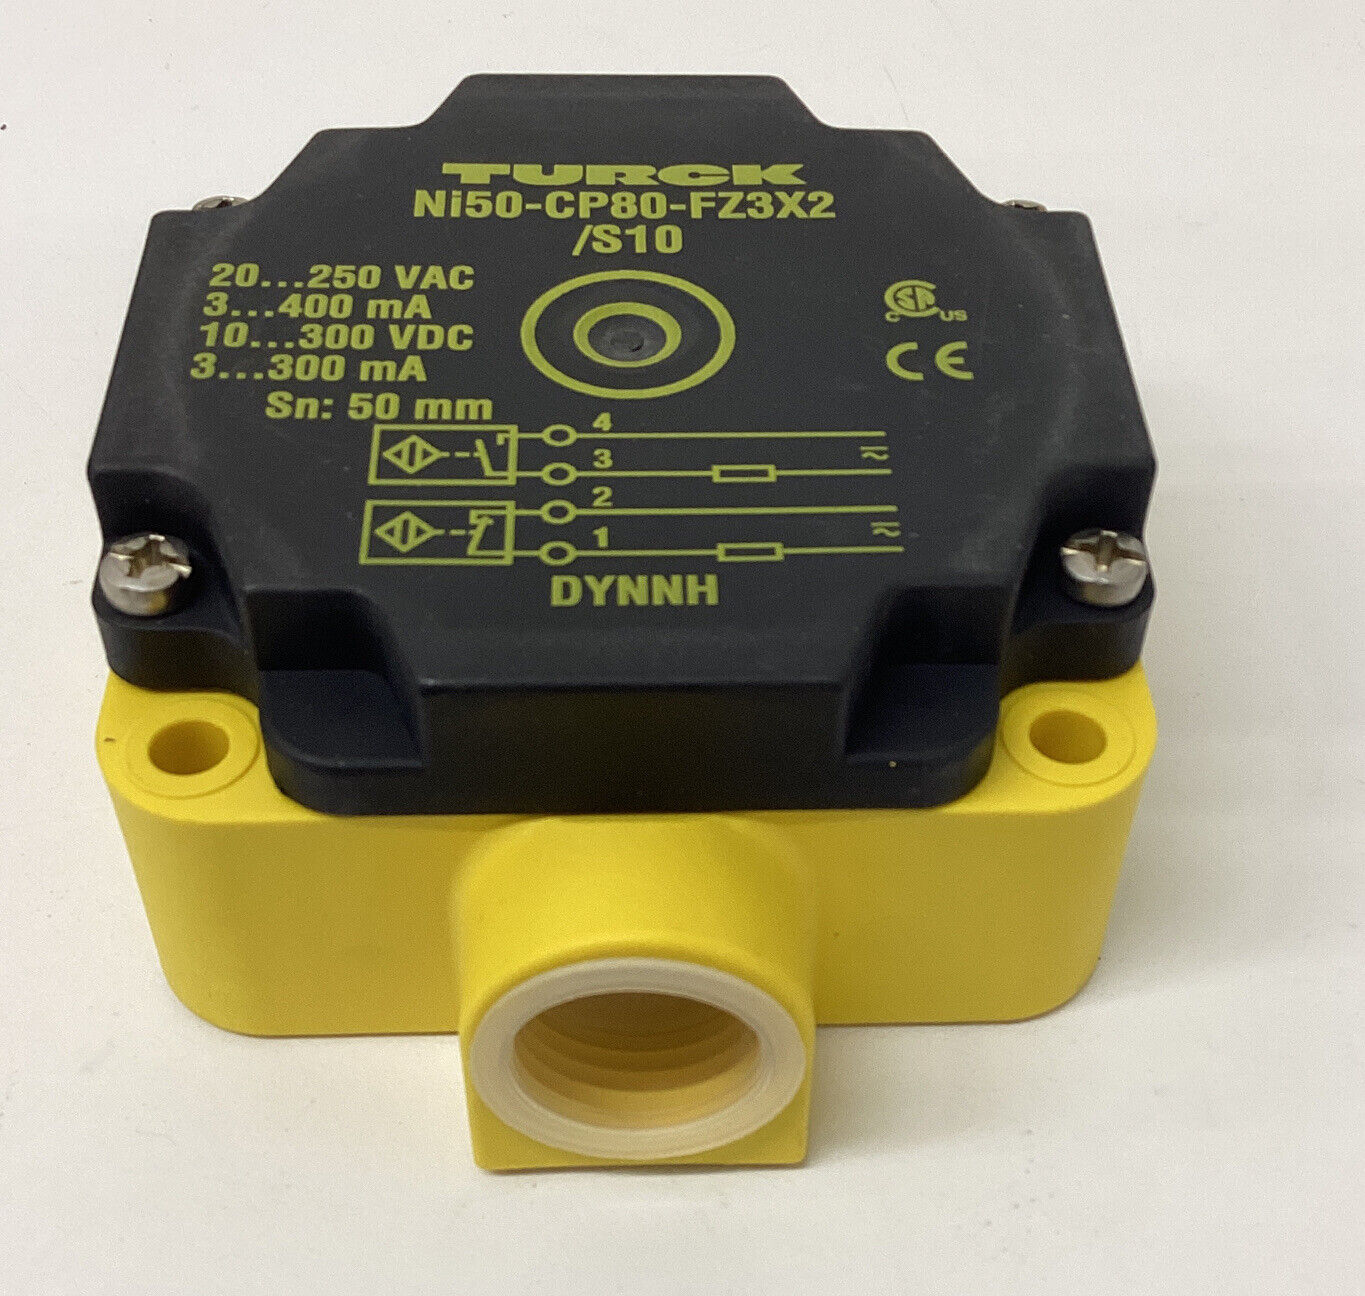 Turck Ni50-CP80-FZ3X2/S10 / 13416 Proximity Sensor (YE245) - 0